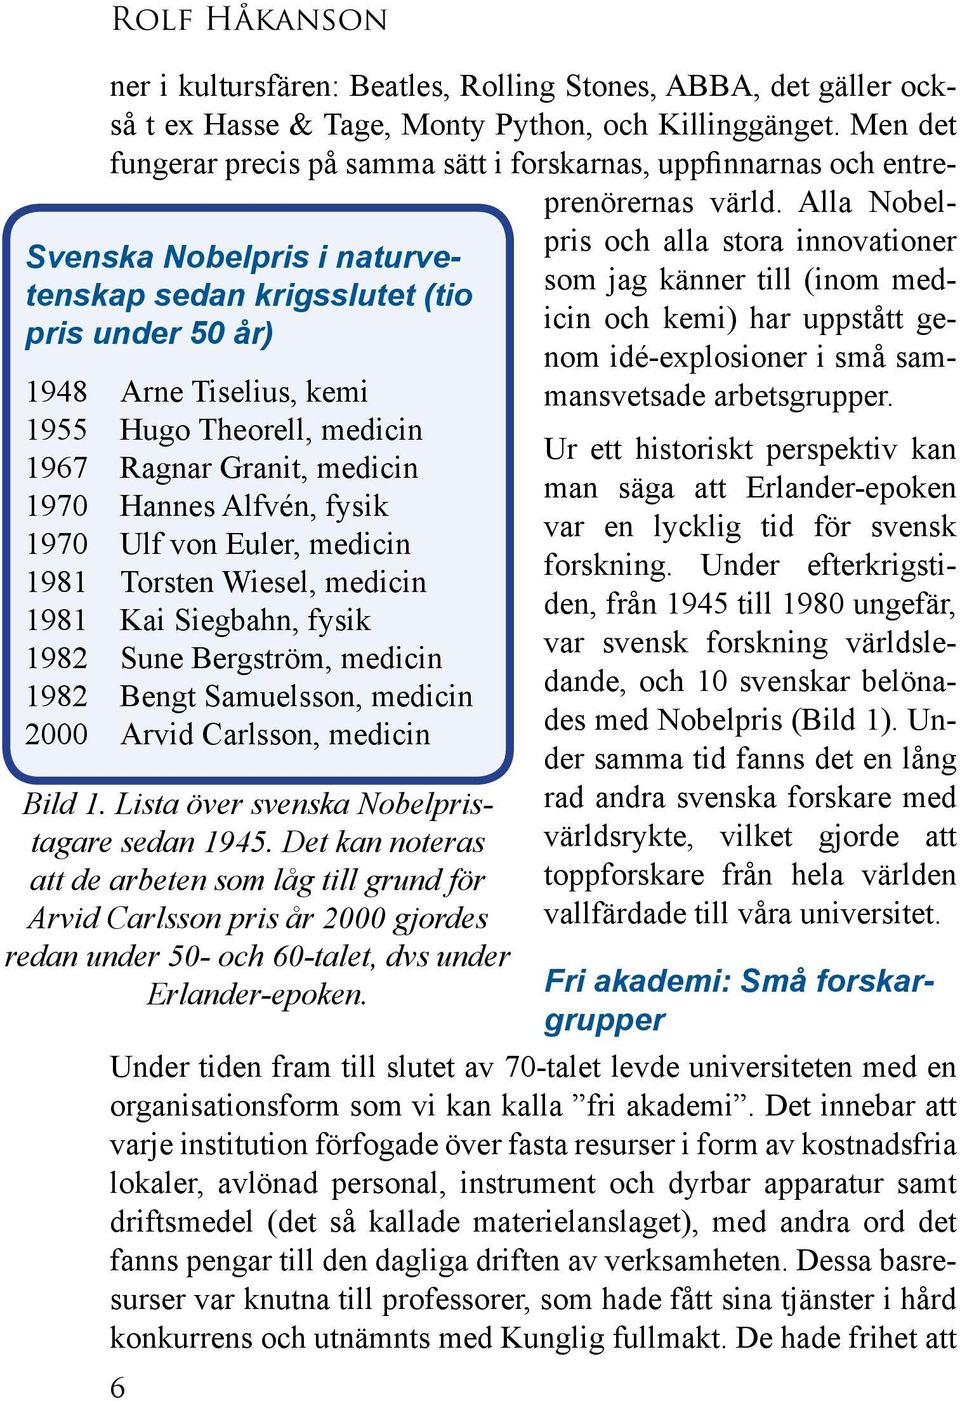 Lista över svenska Nobelpristagare sedan 1945. Det kan noteras att de arbeten som låg till grund för Arvid Carlsson pris år 2000 gjordes redan under 50- och 60-talet, dvs under Erlander-epoken.